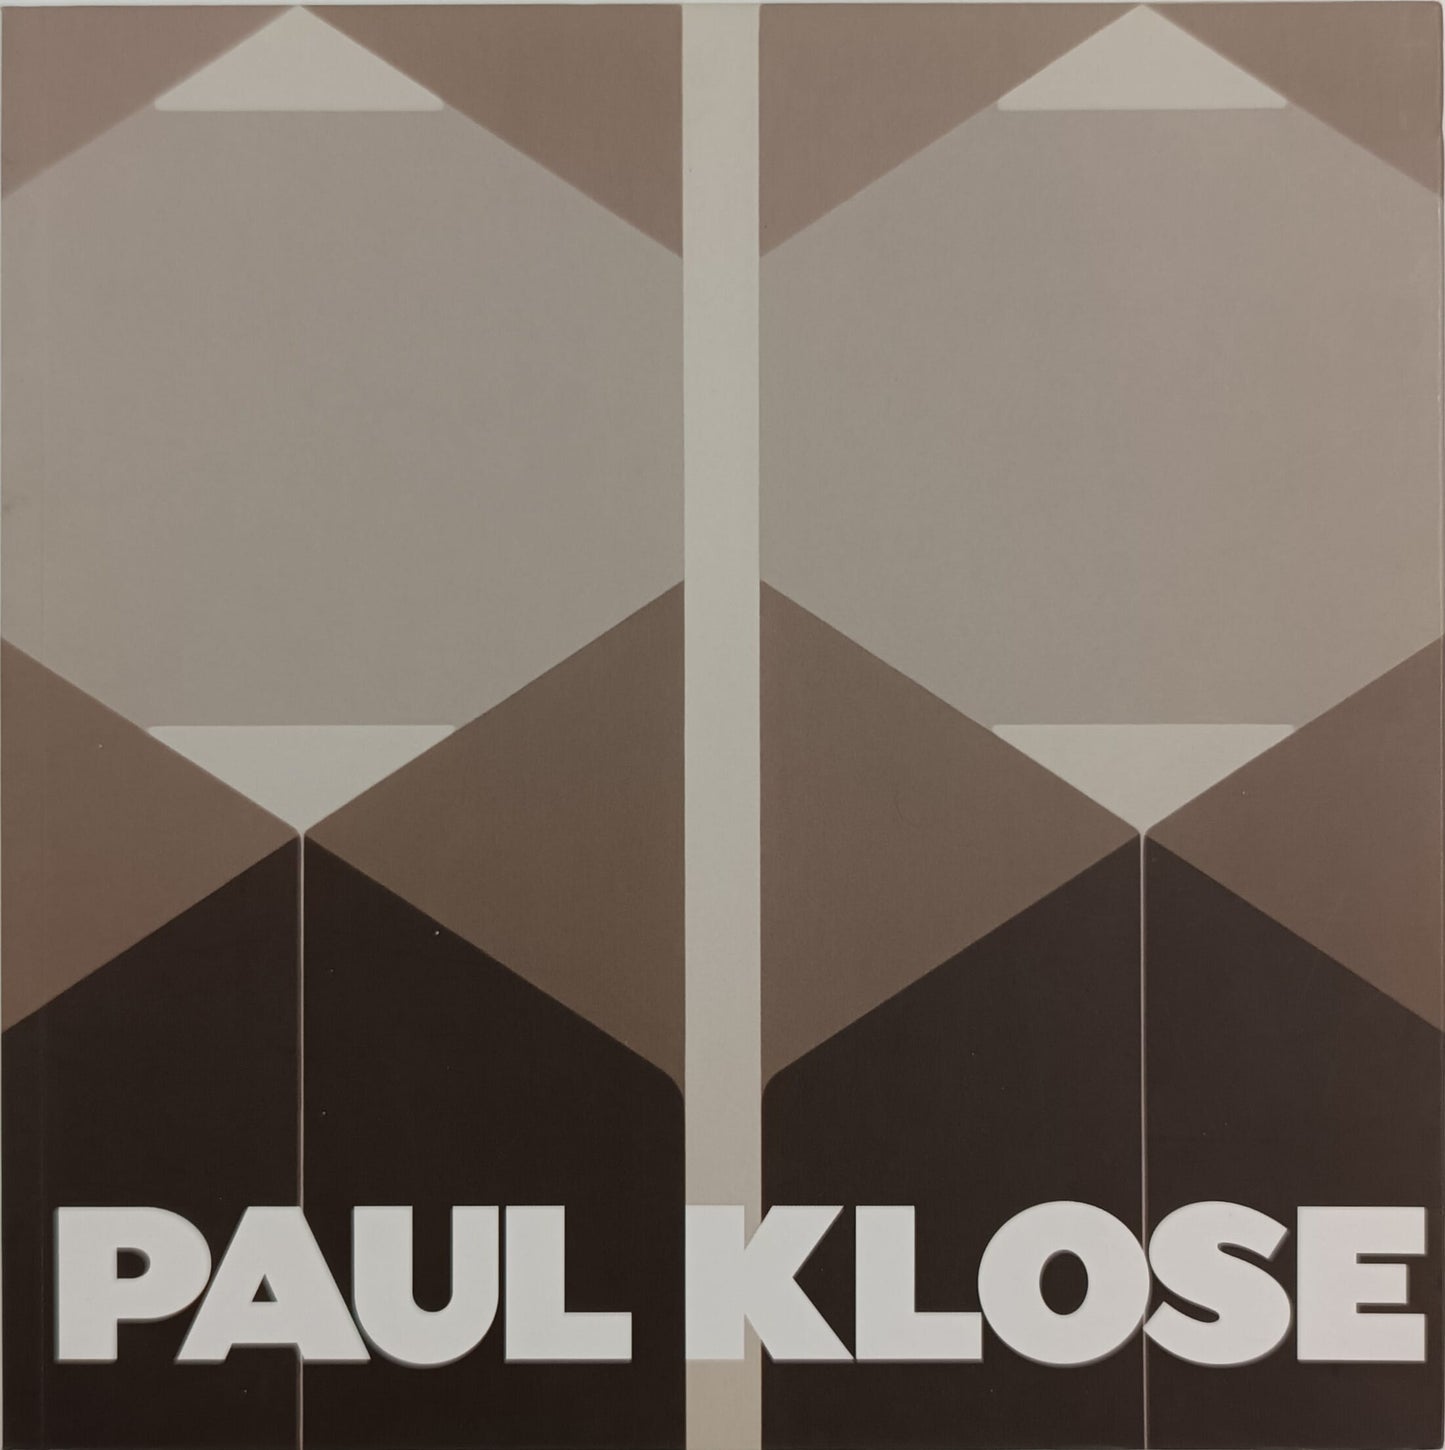 Paul Klose